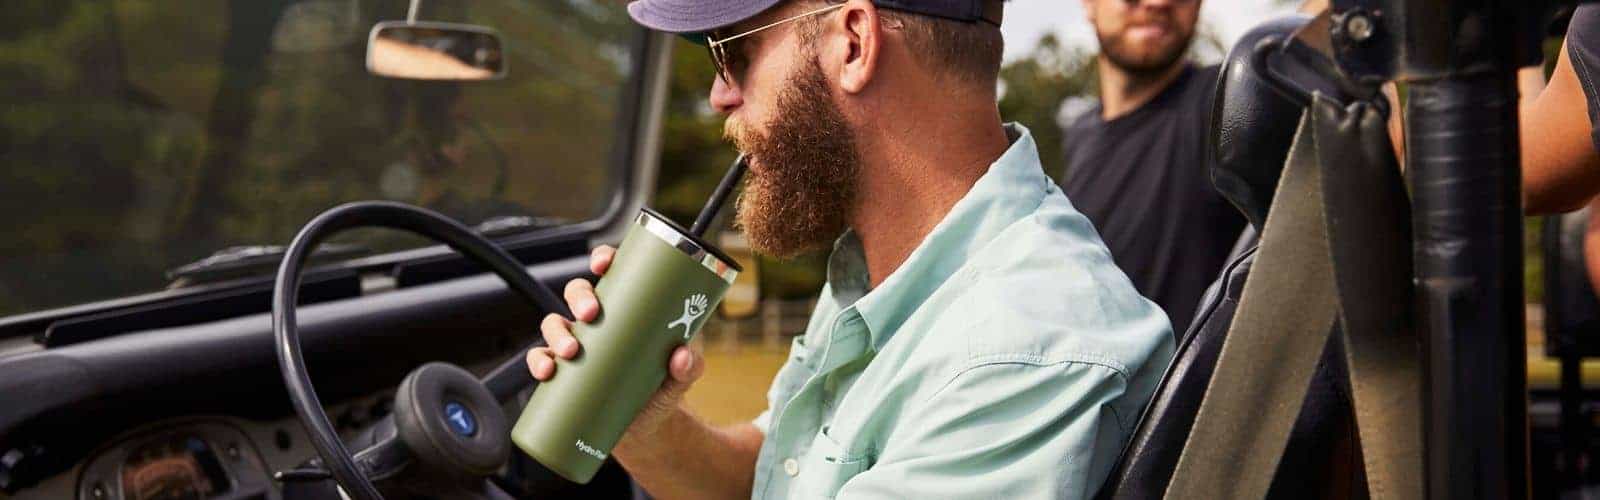 Un hombre conduce un jeep mientras bebe de una taza. La taza contiene una bebida refrescante.